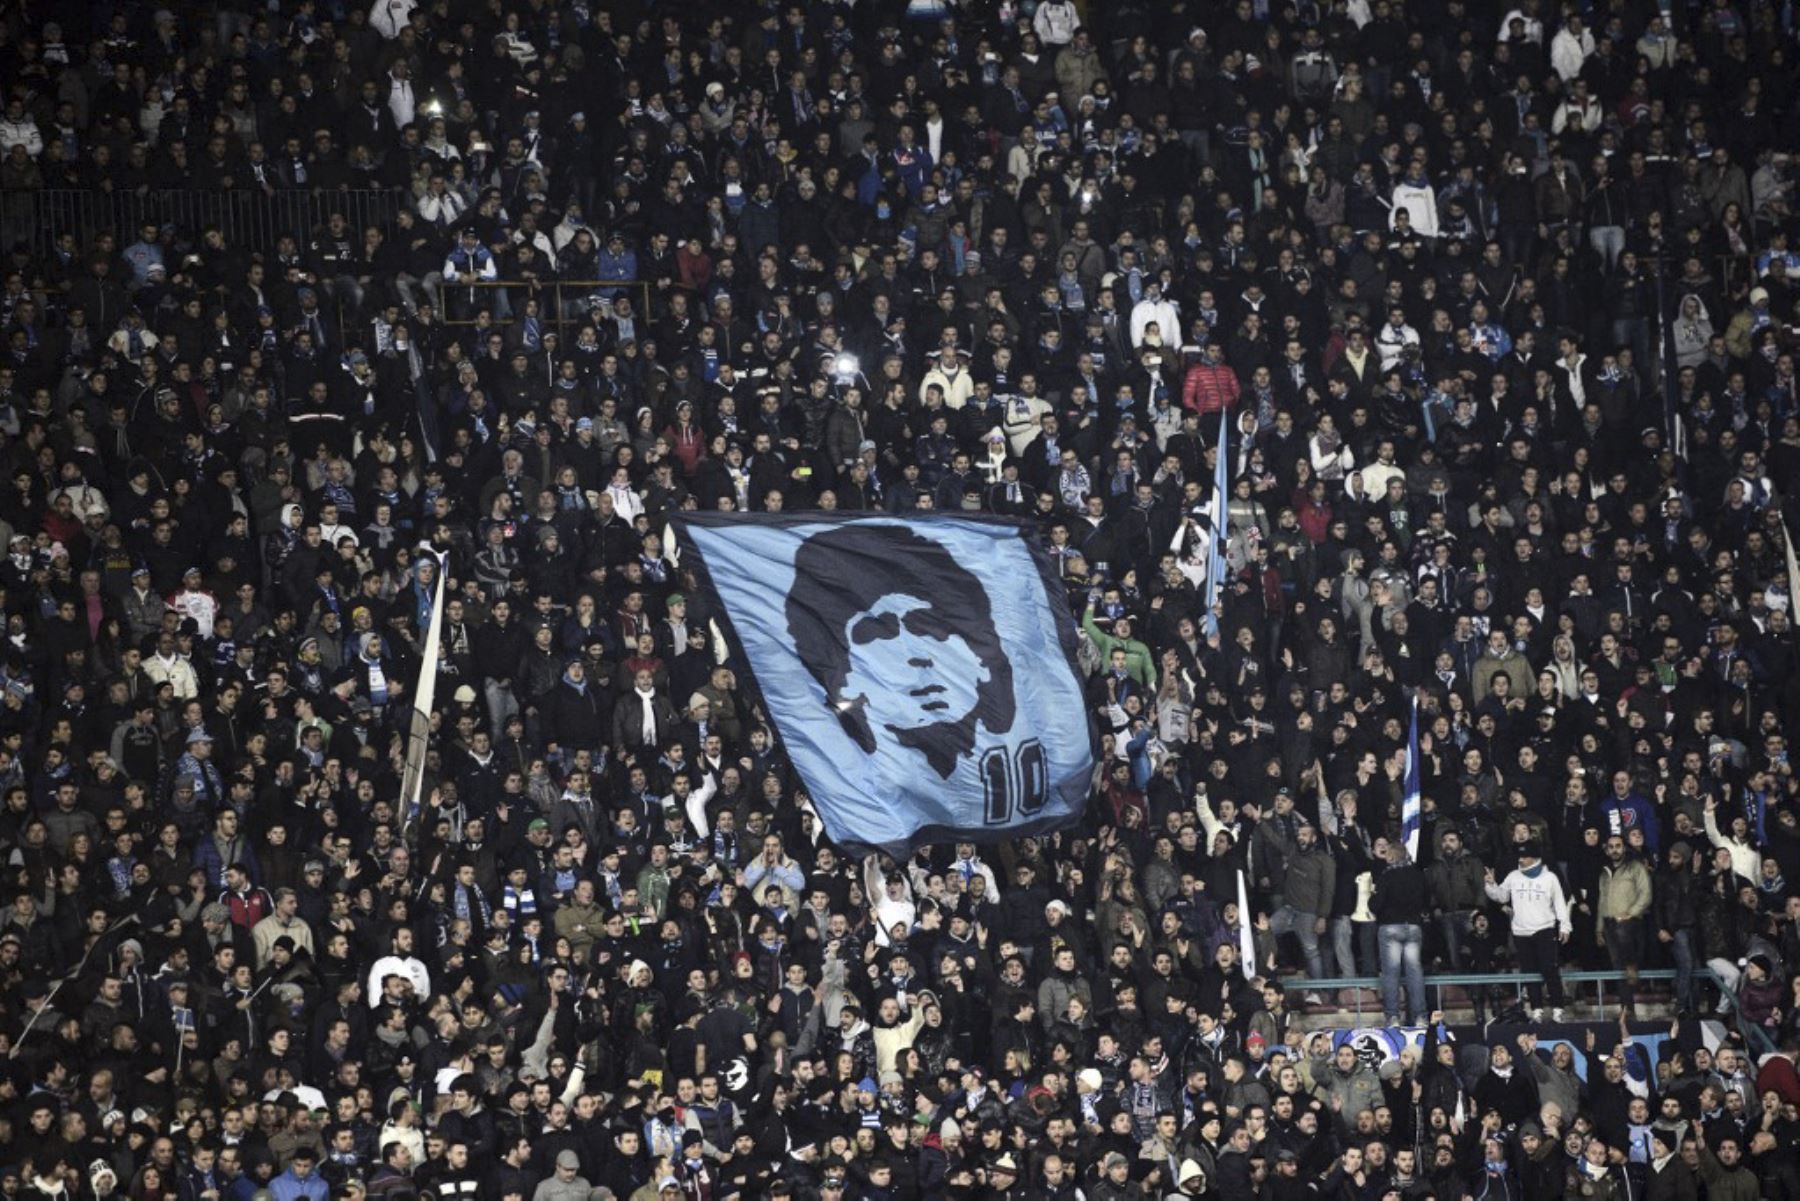 Los fanáticos del SSC Napoli muestran una bandera representando al ex jugador argentino del SSC Napoli Diego Armando Maradona durante el partido de fútbol de la Serie A SSC Napoli vs A.S. Roma en el estadio San Paolo de Nápoles el 6 de enero de 2013. Foto: AFP